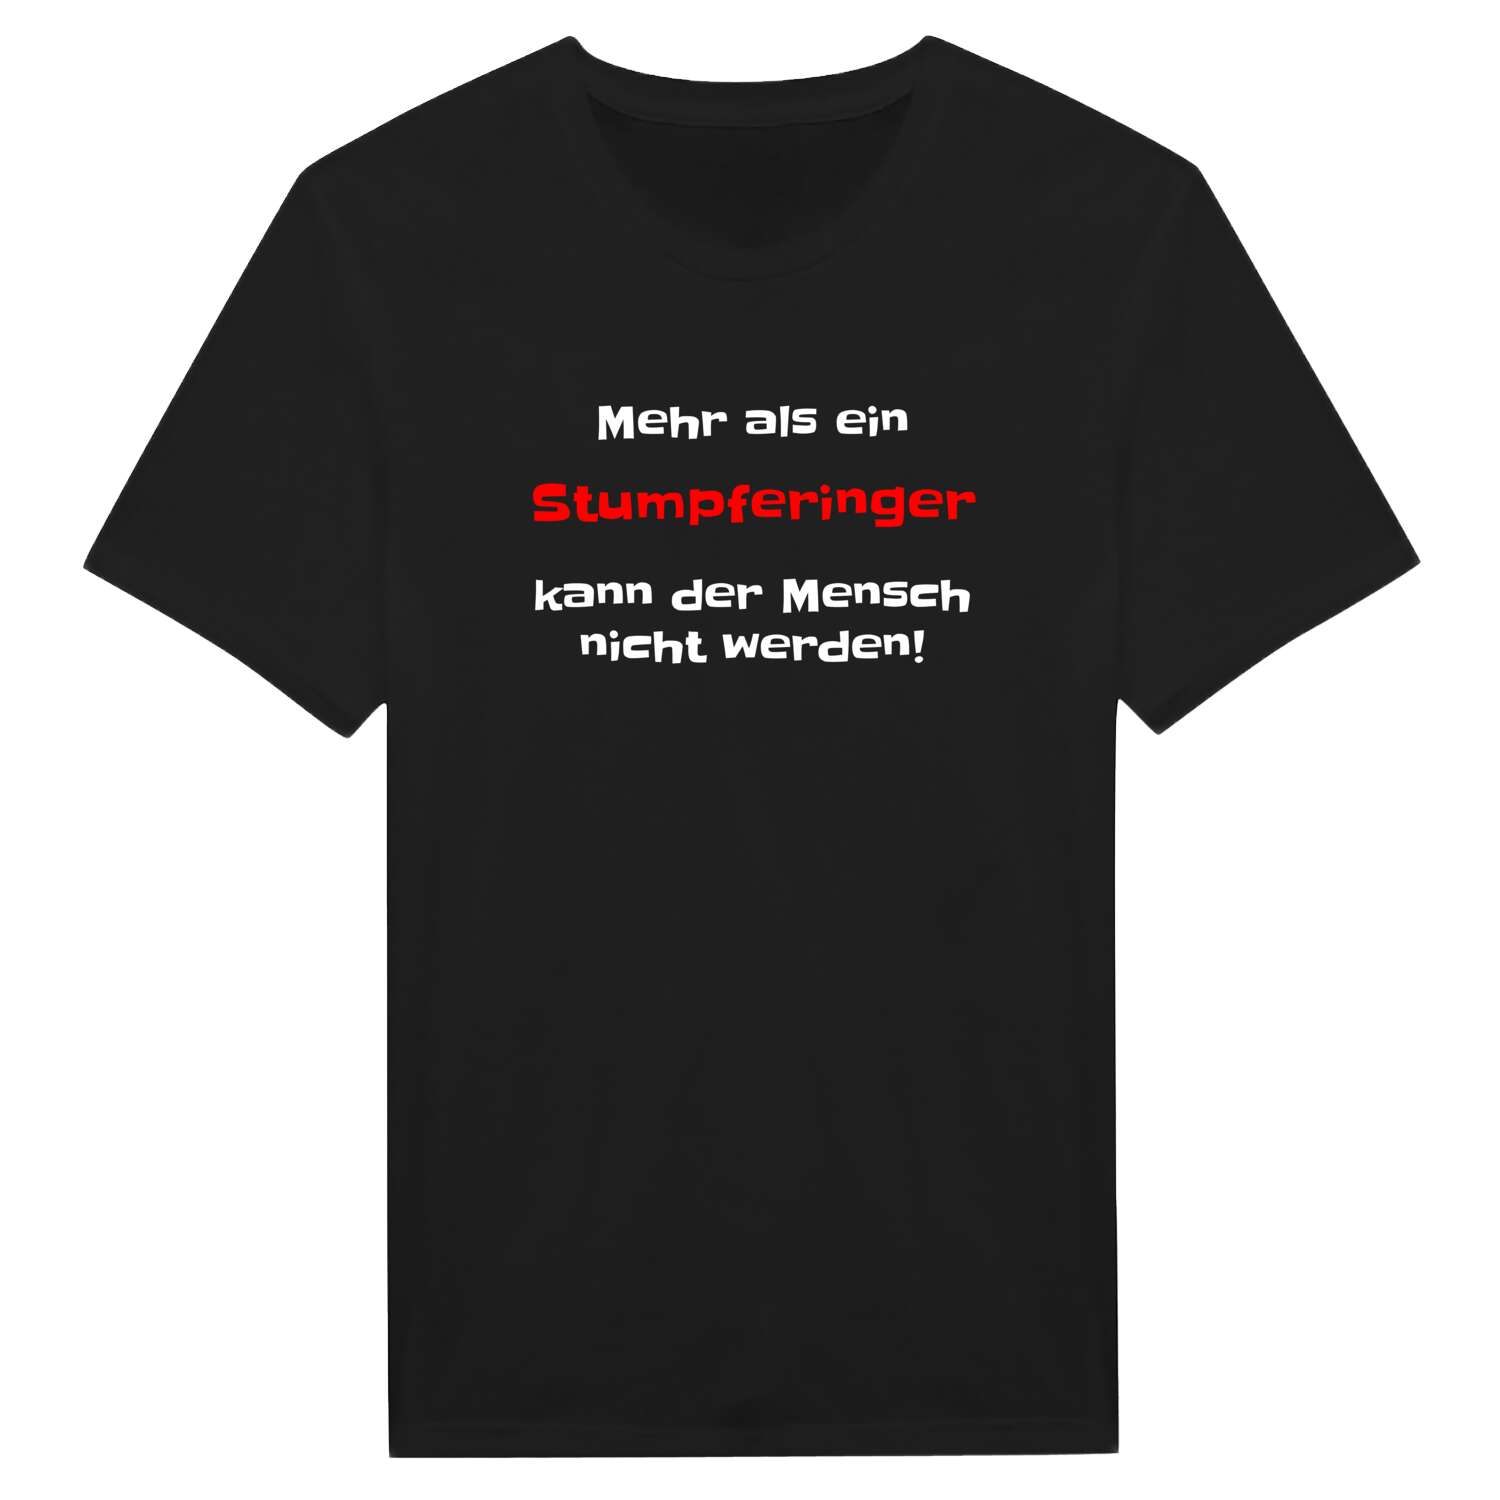 Stumpfering T-Shirt »Mehr als ein«